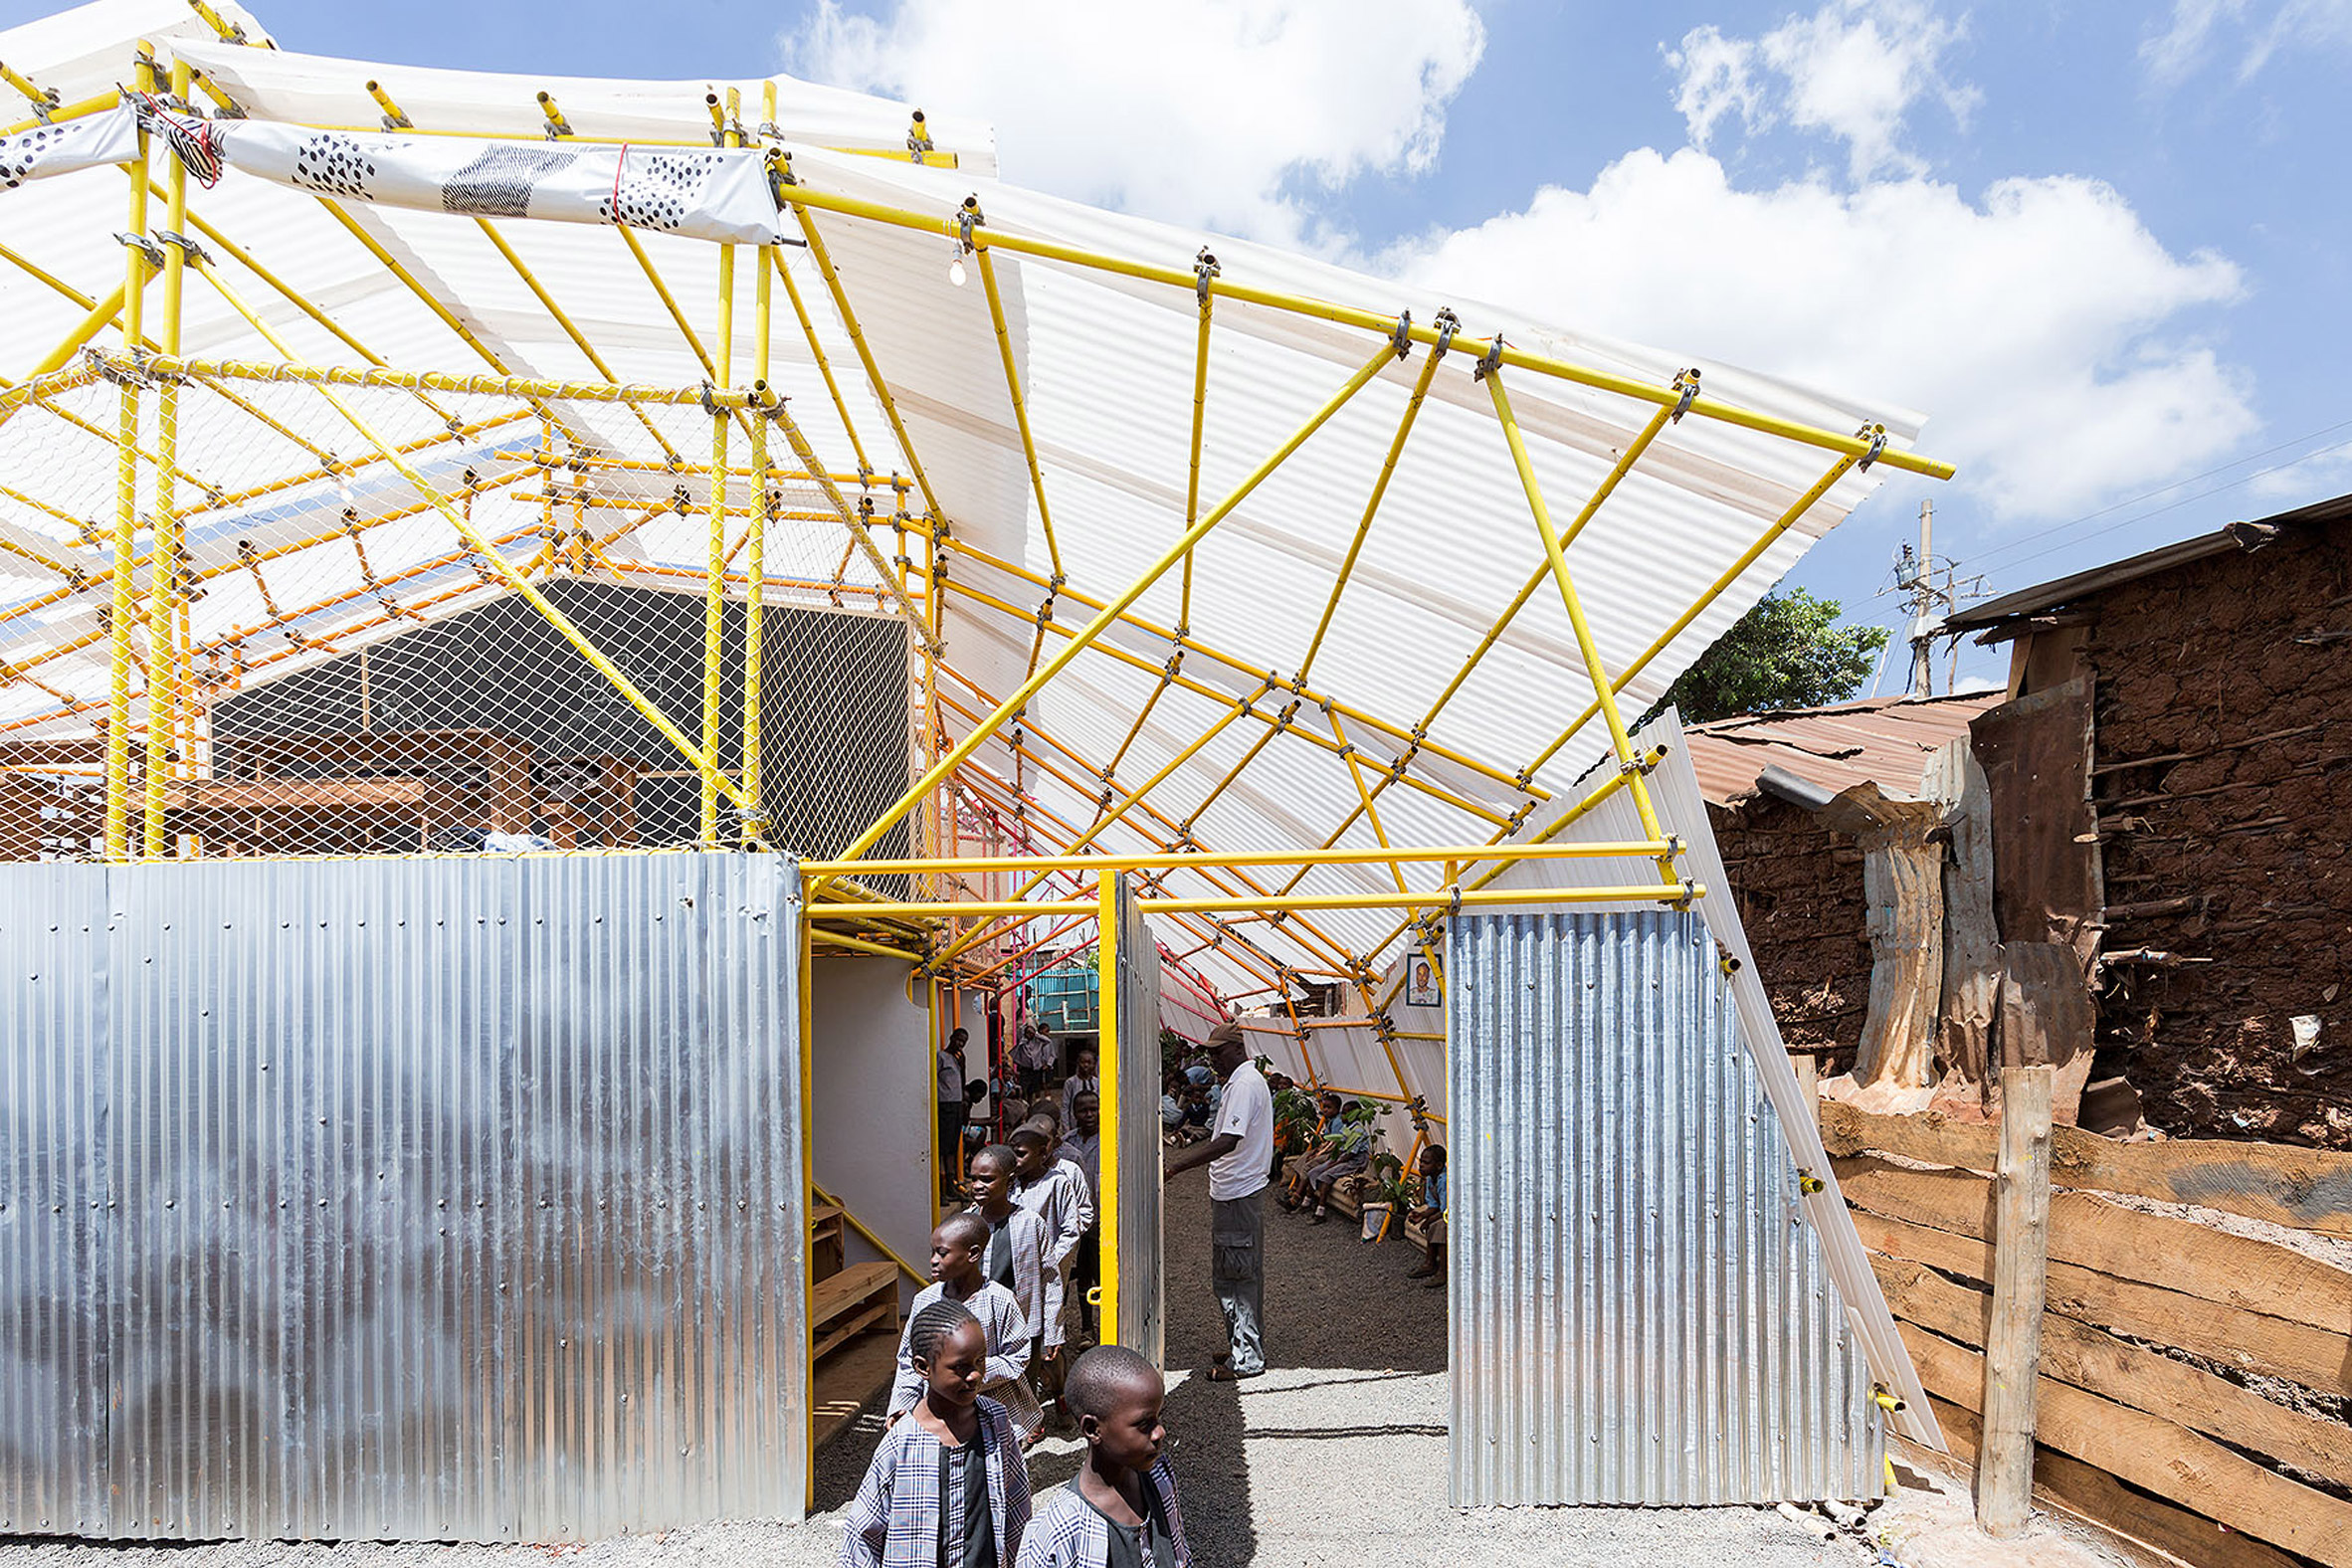 selgas-cano-second-home-project-in-kibera-rohan-silva_dezeen_2364_col_46